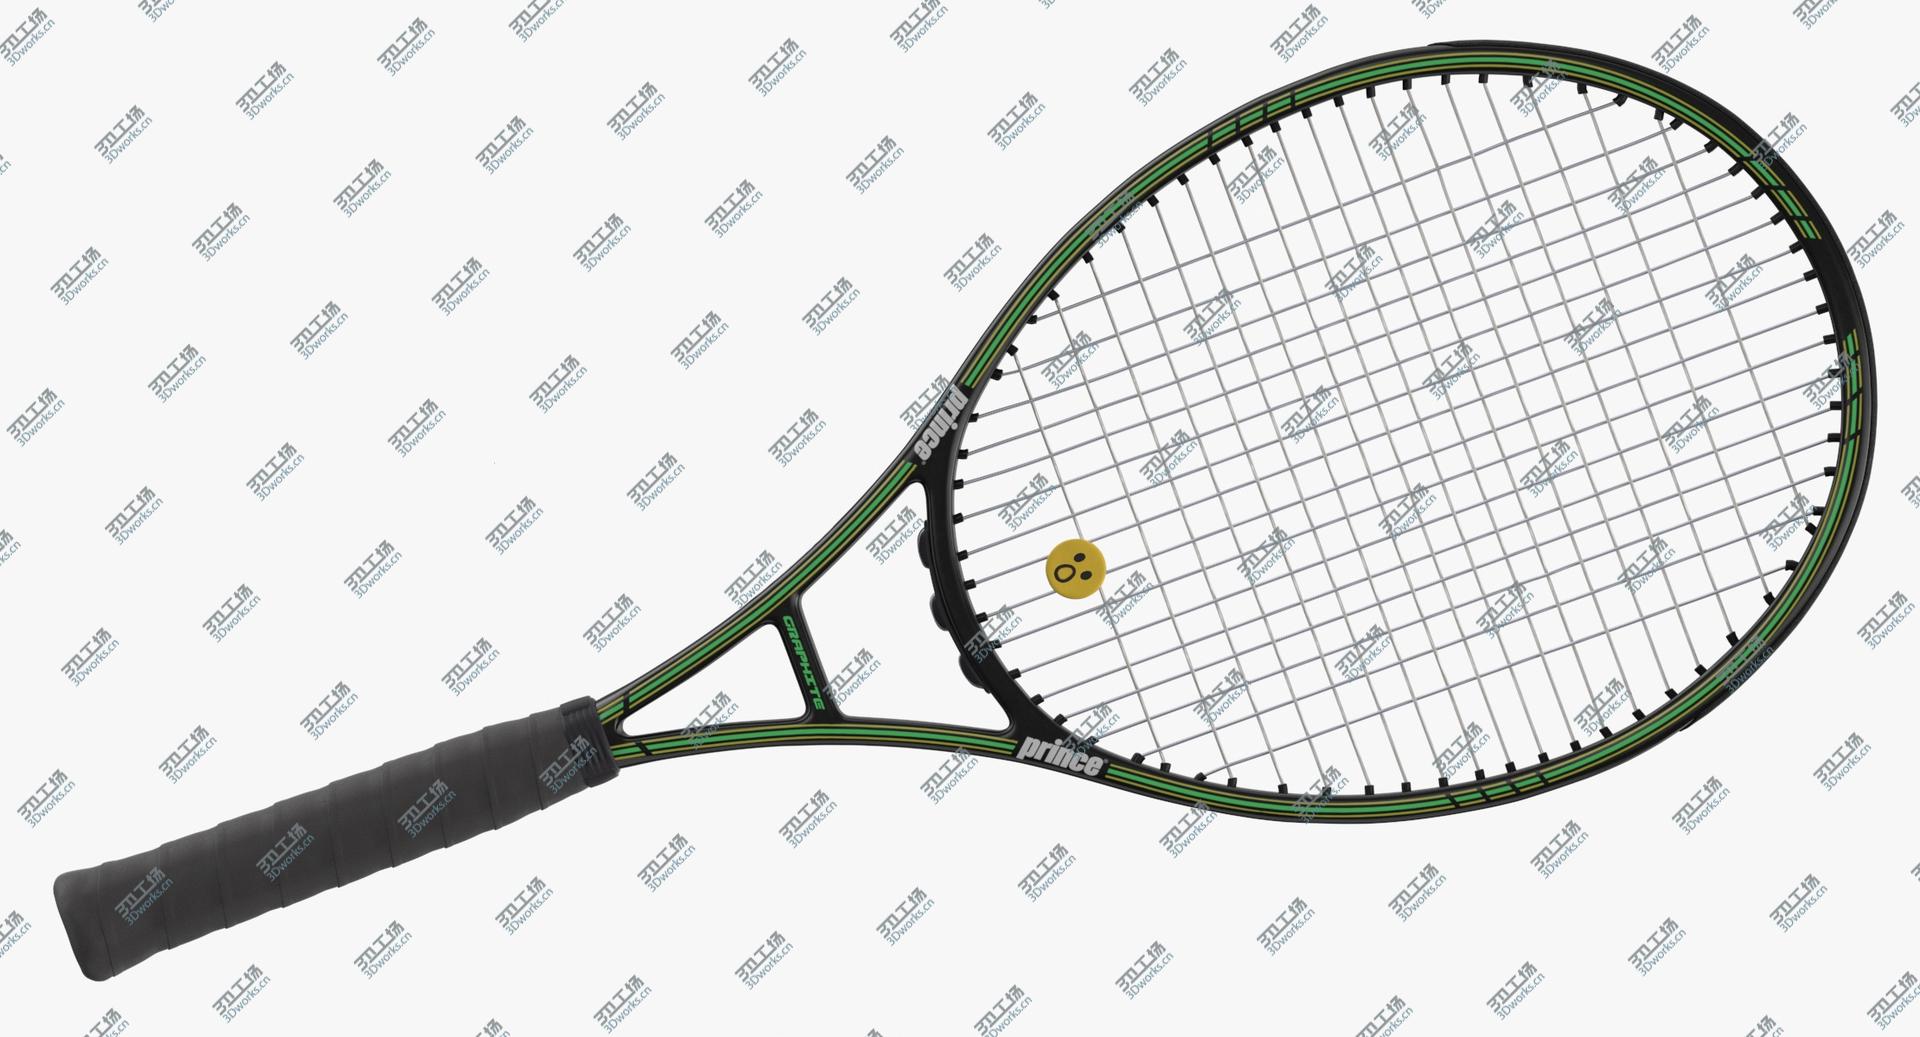 images/goods_img/2021040234/3D Tennis Racket model/2.jpg